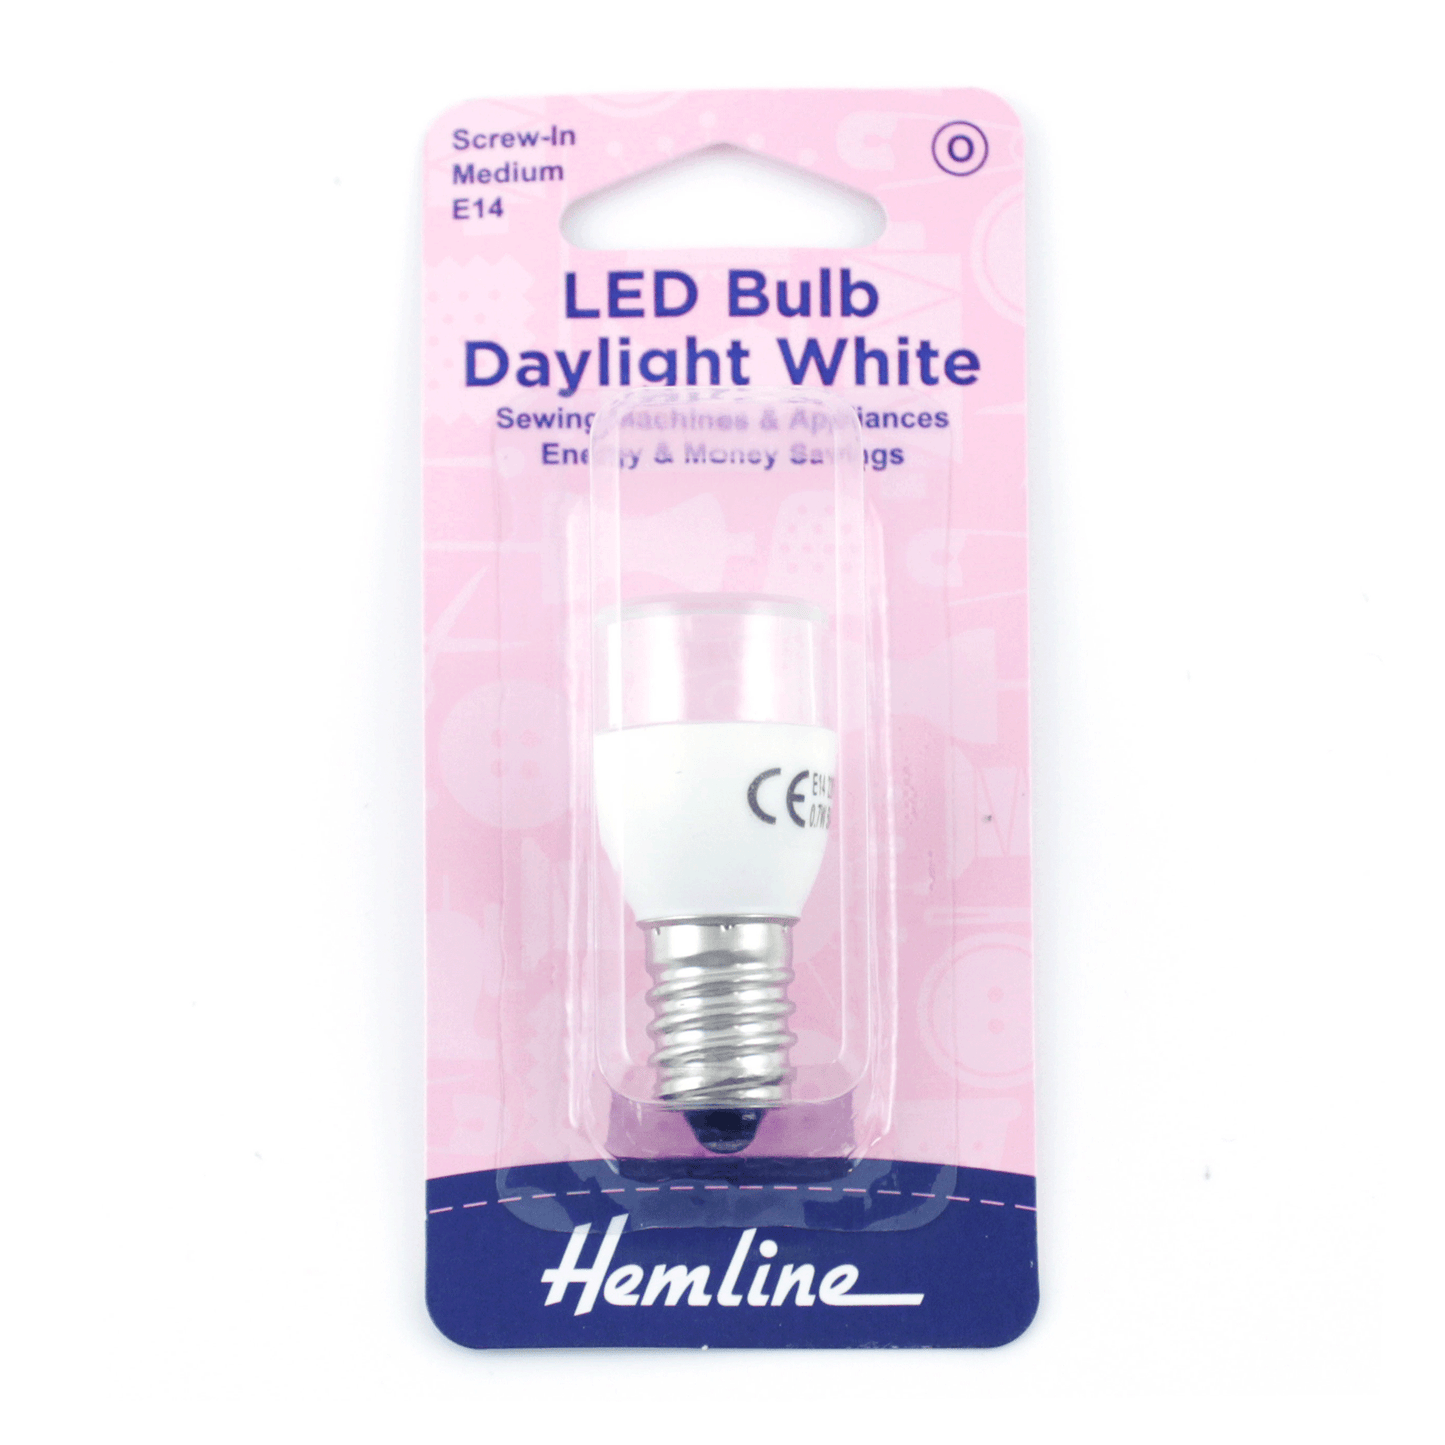 Hemline LED Bulb Daylight White